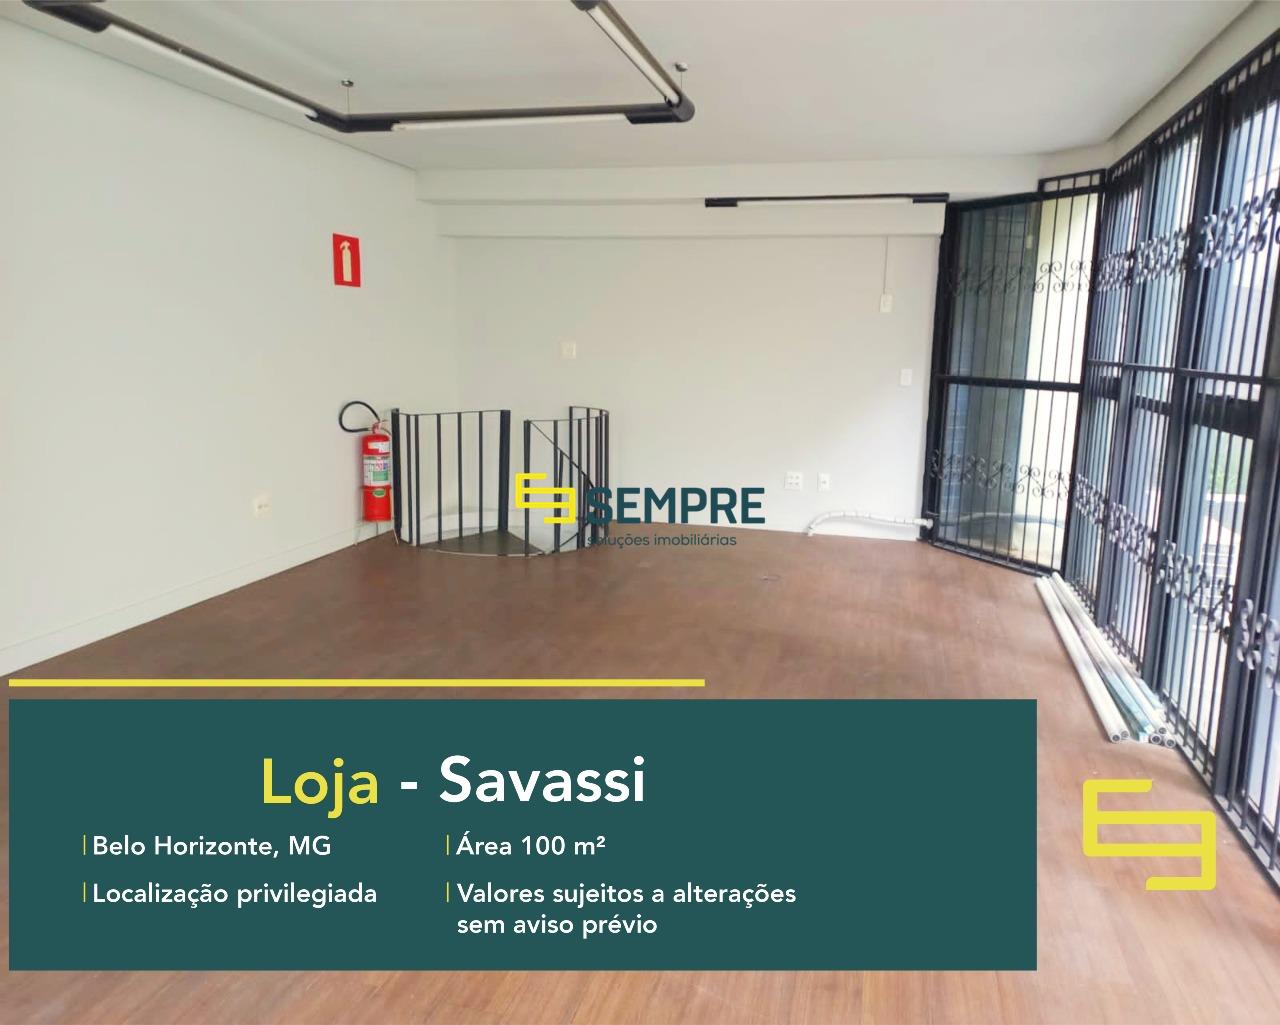 Loja para alugar no centro da Savassi em Belo Horizonte. O estabelecimento comercial para alugar conta, sobretudo, com área de 75 m².